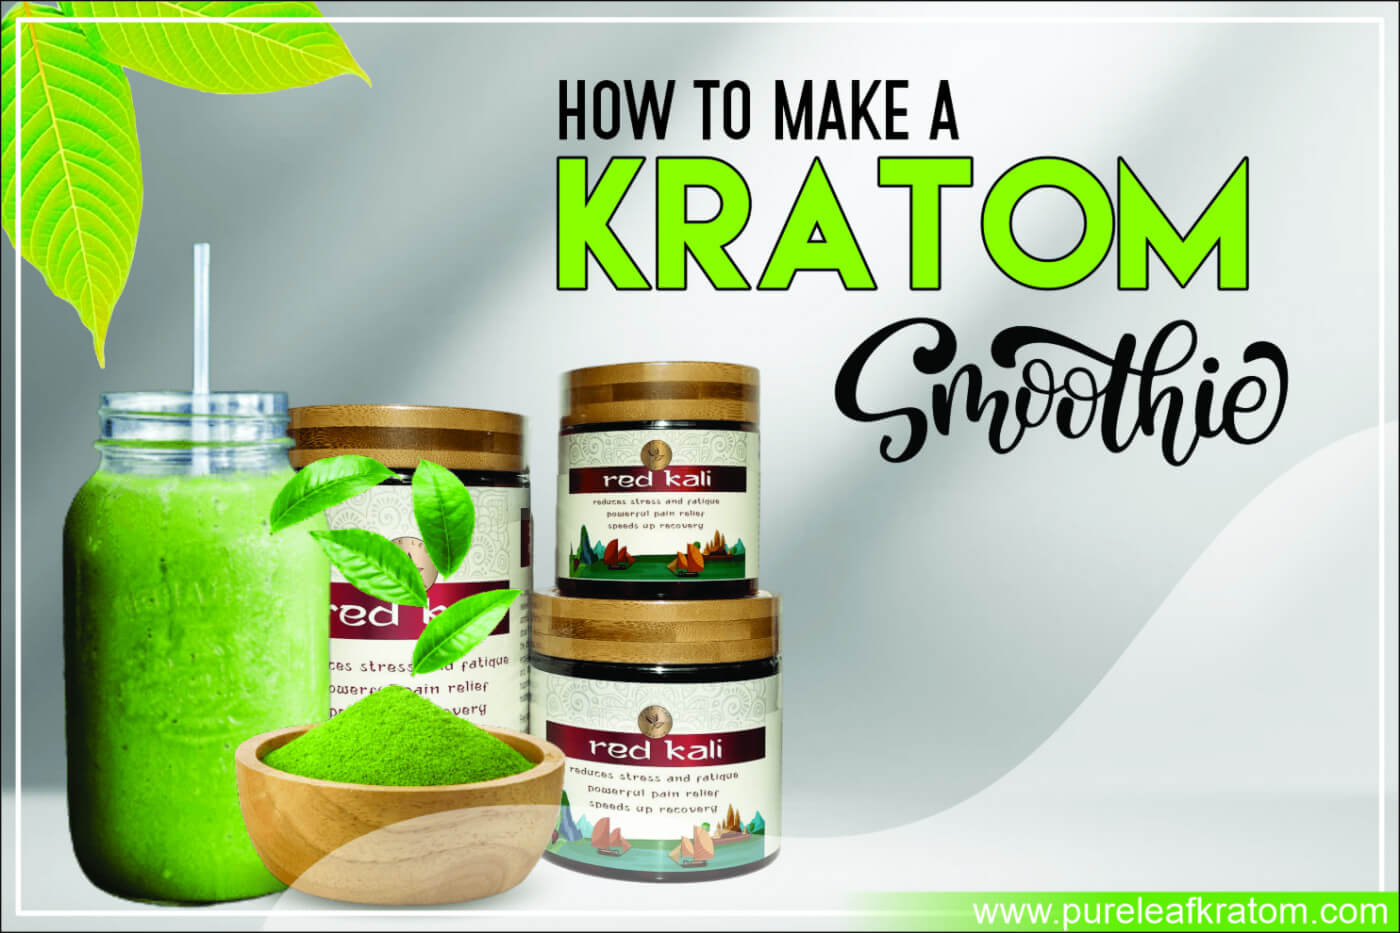 How to Make a Kratom Smoothie?